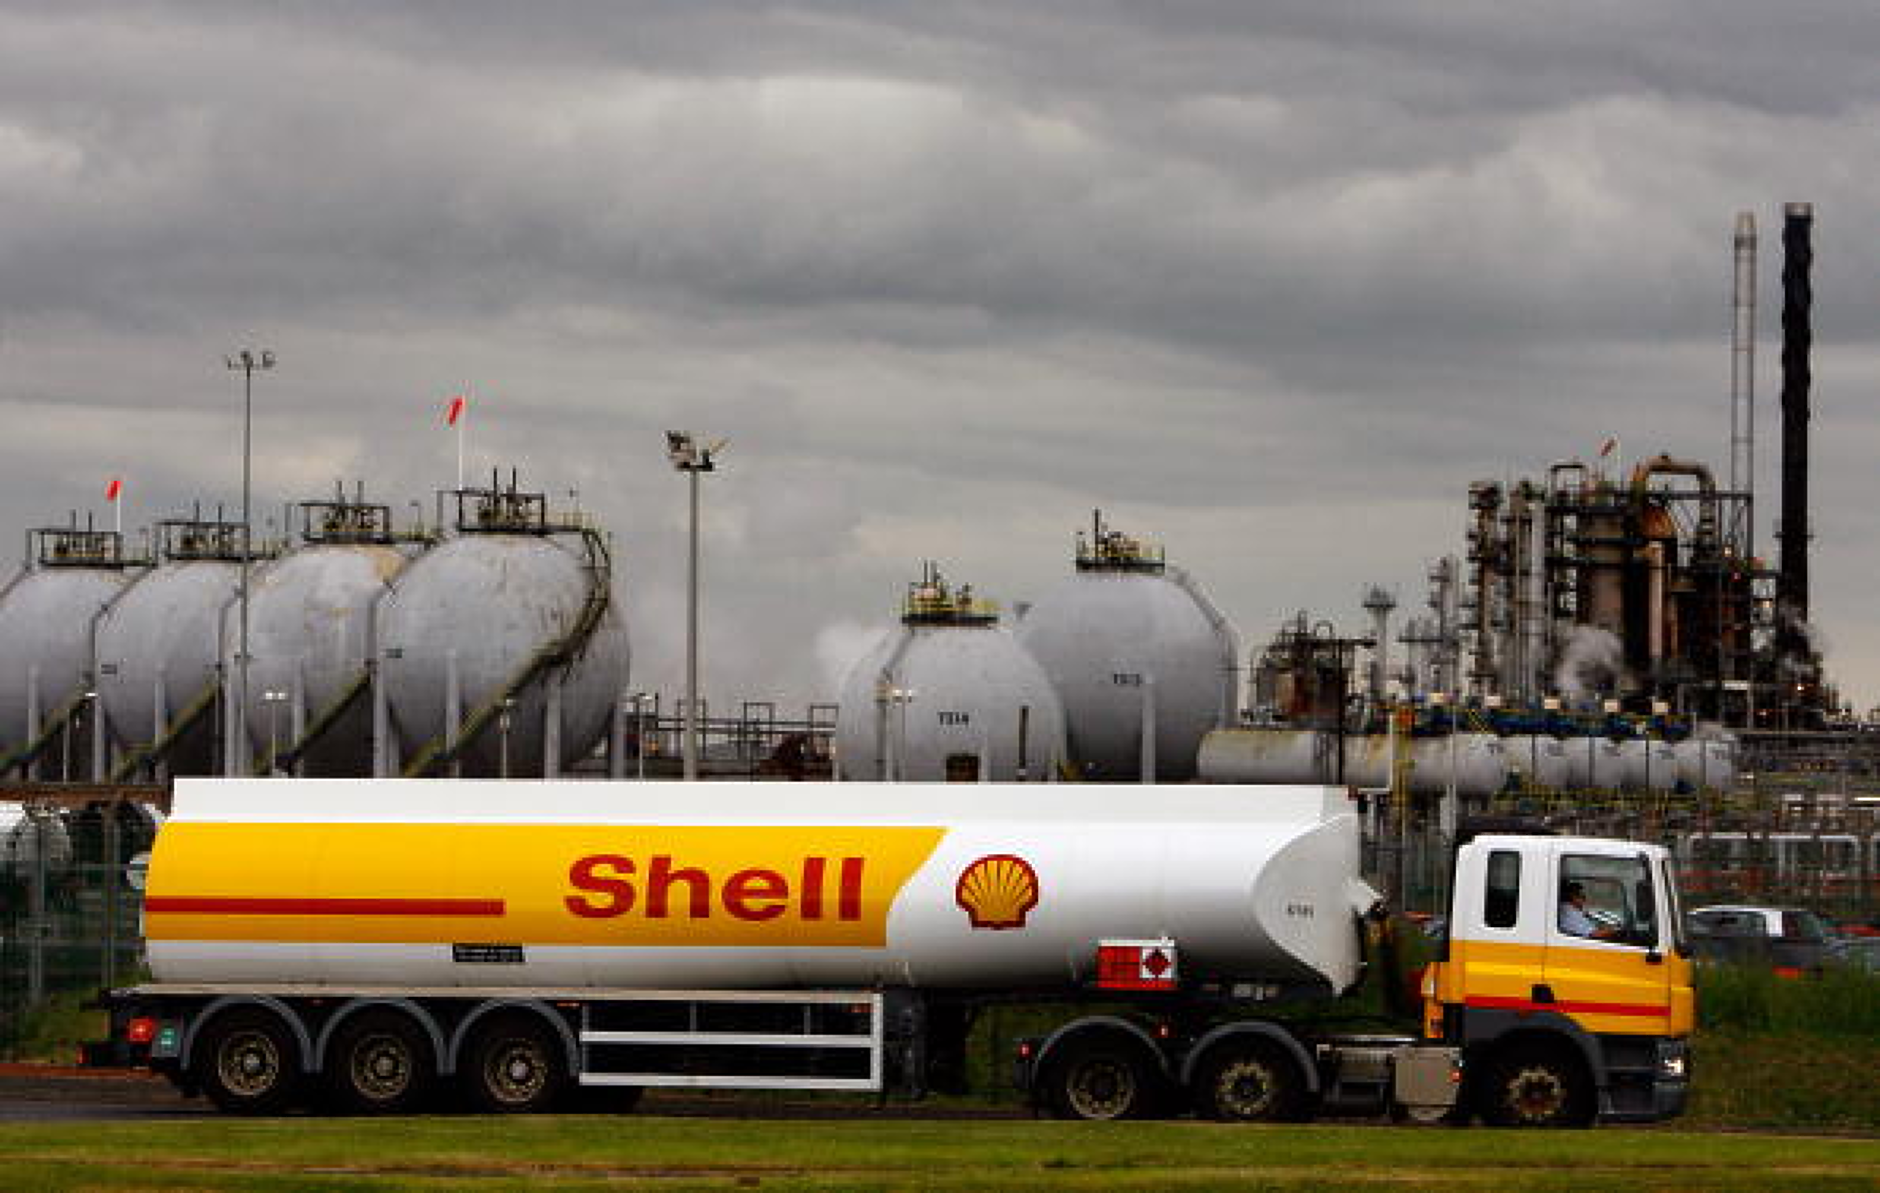 Shell адаптира петролна инфраструктура за добив на газ в Северно море